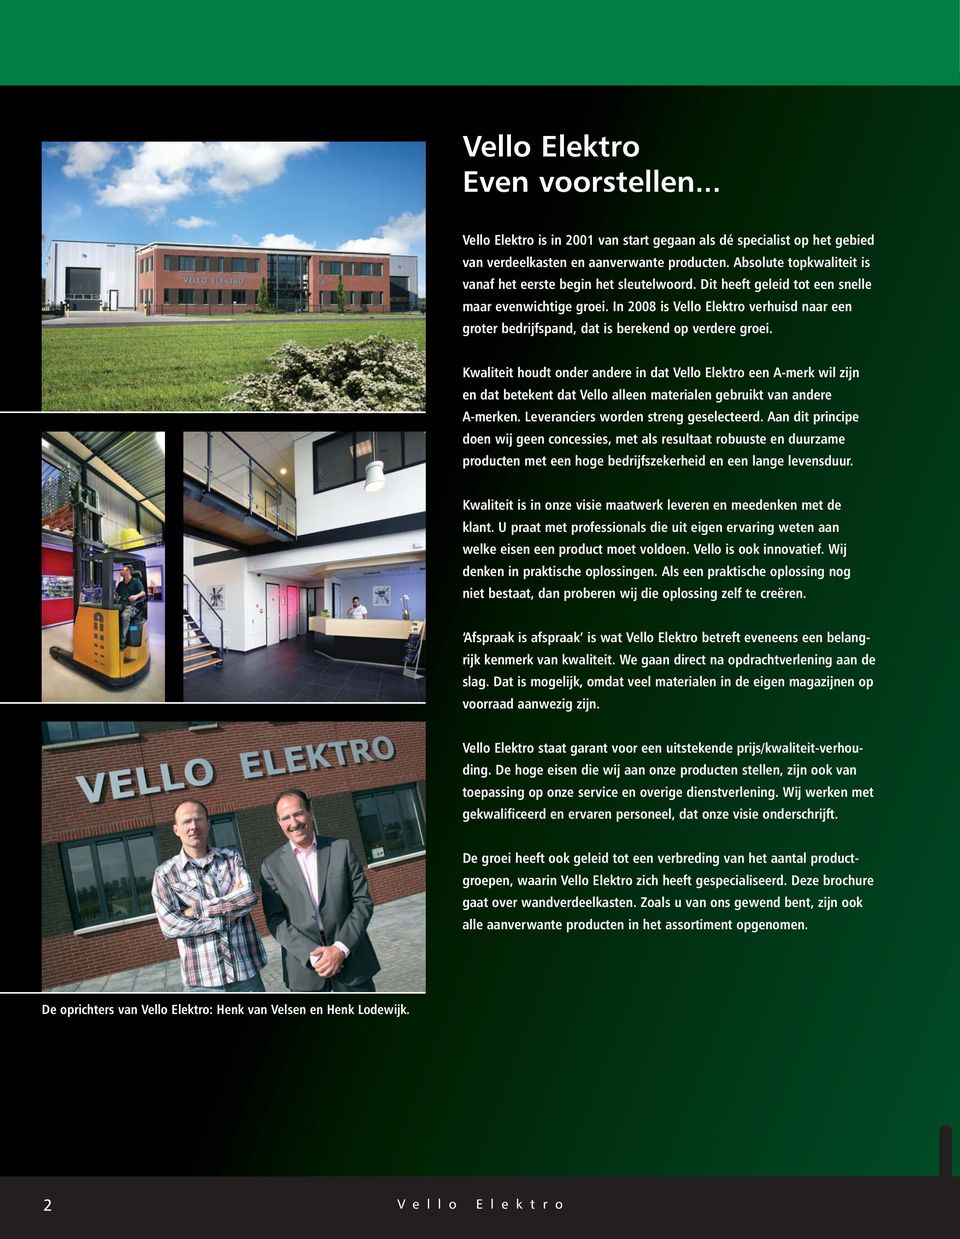 In 2008 is Vello Elektro verhuisd naar een groter bedrijfspand, dat is berekend op verdere groei.